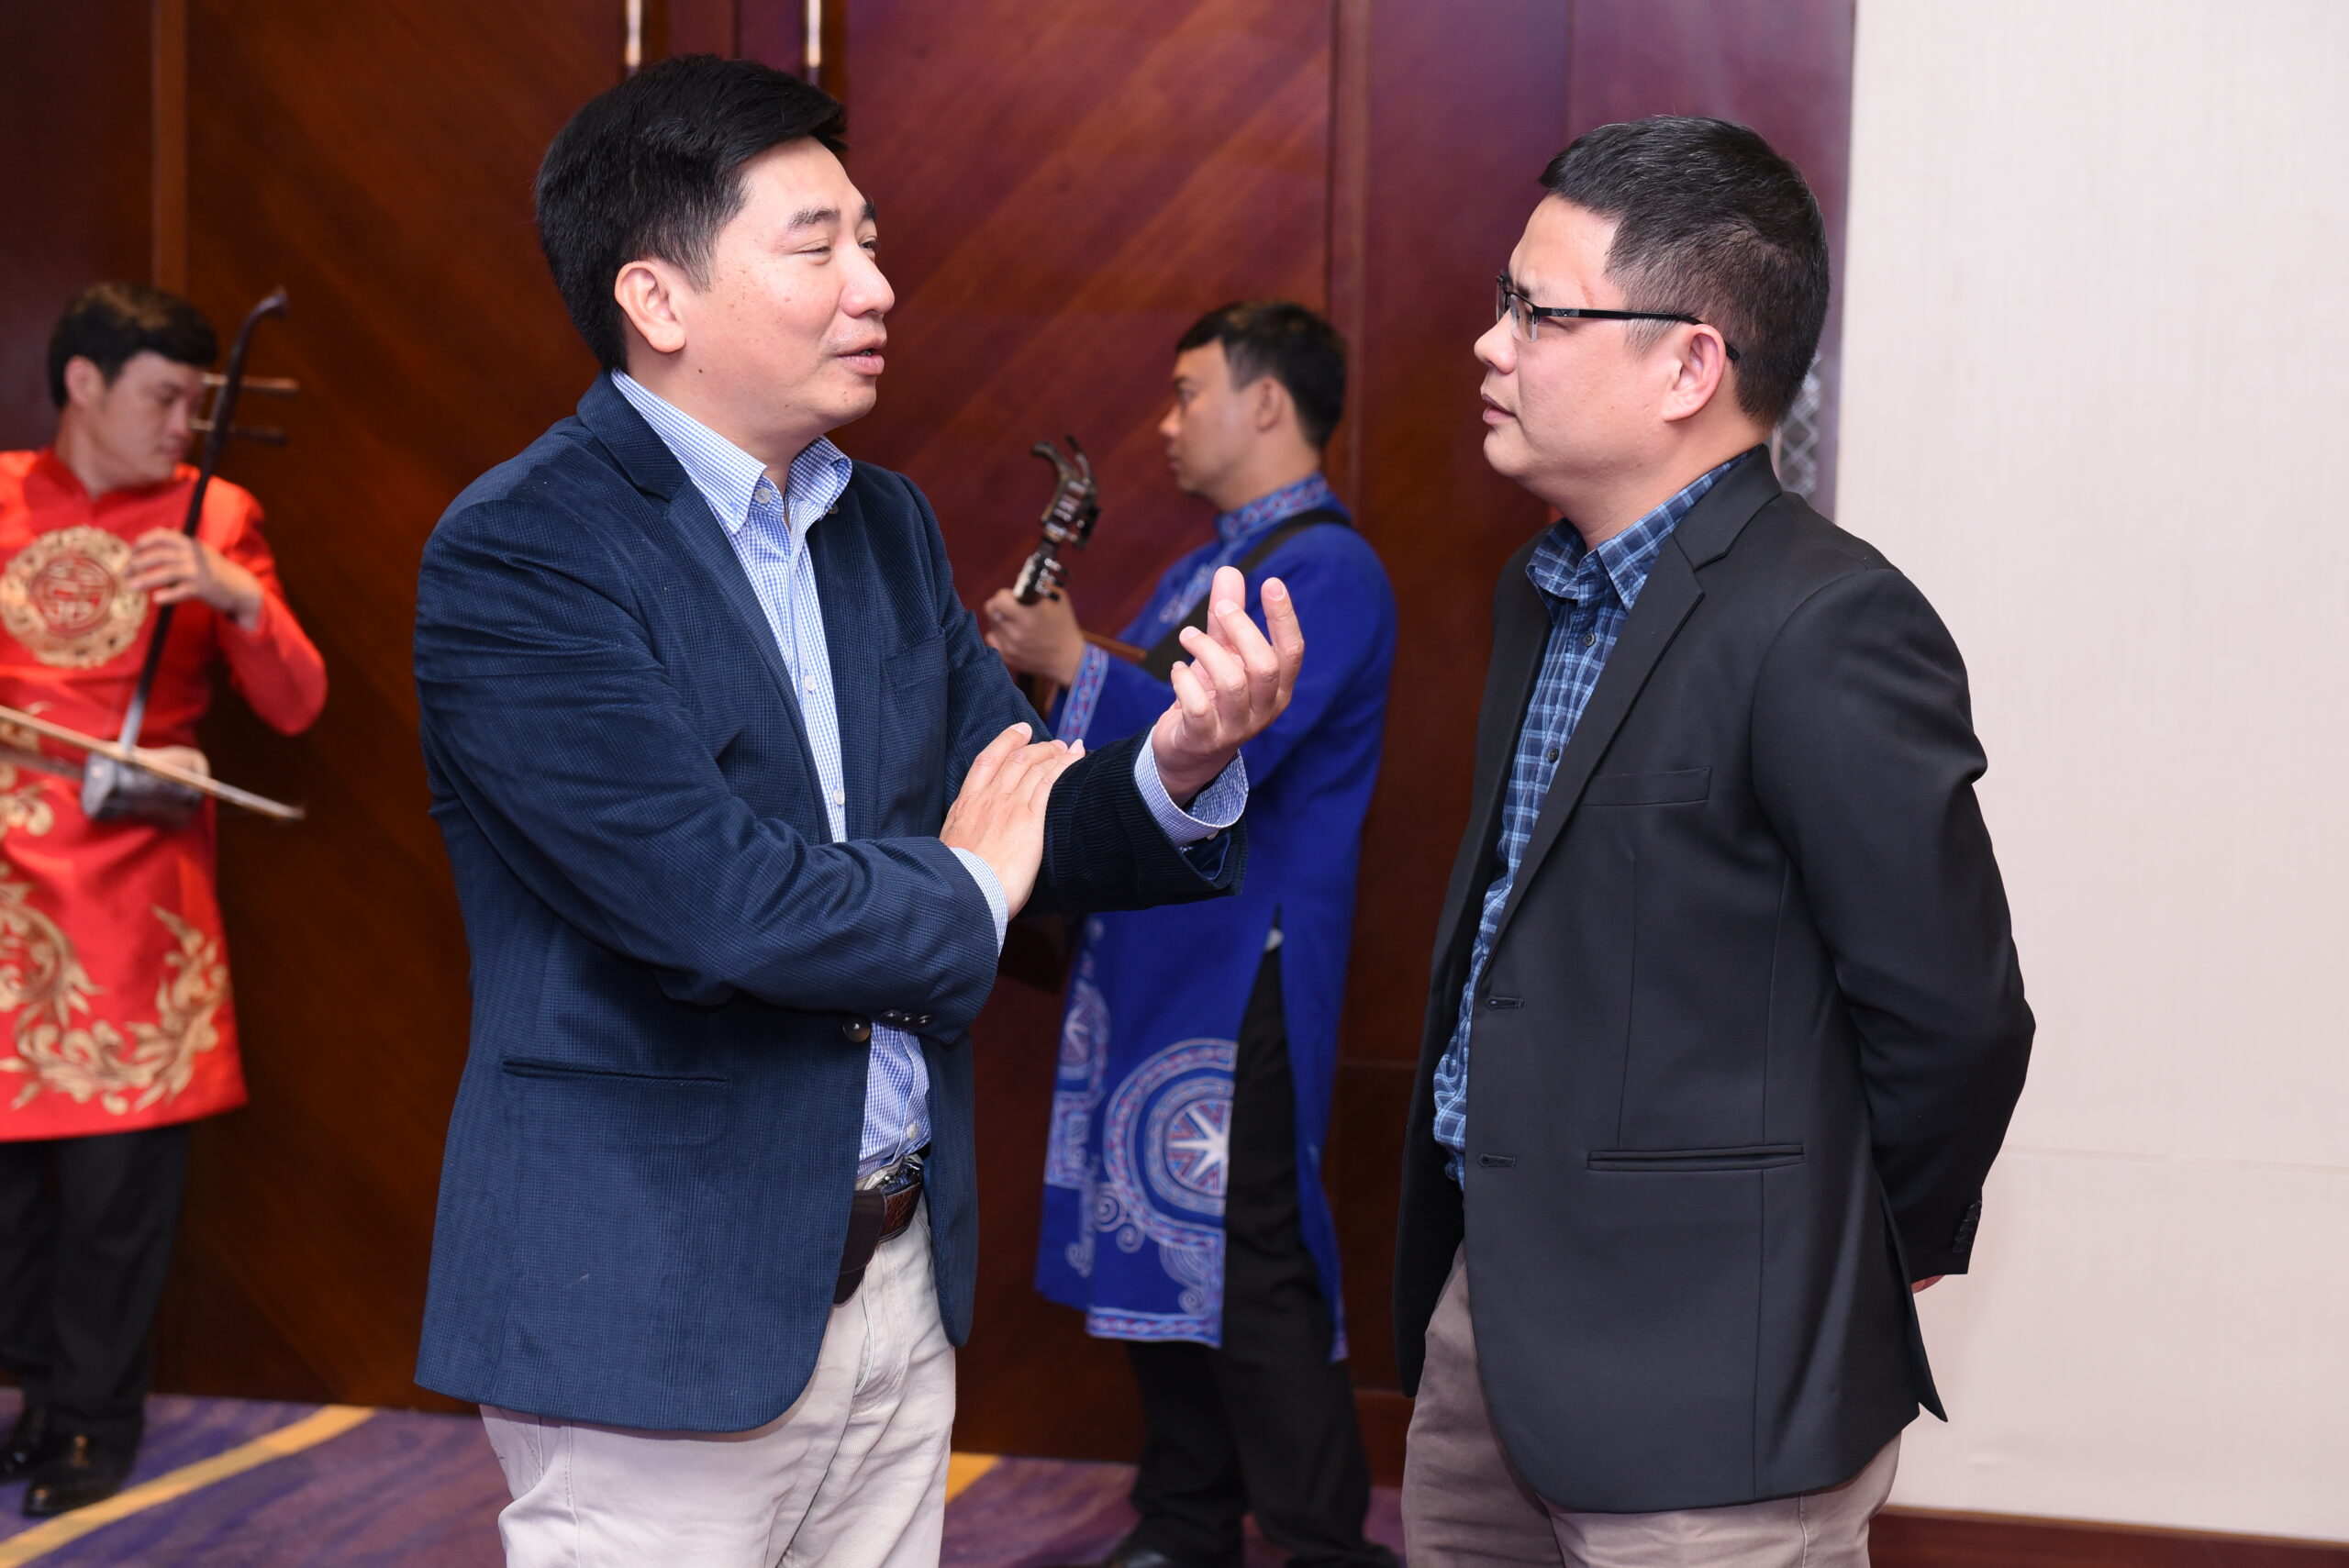 Lý do nên chọn HCMC Events để tổ chức hội nghị khách hàng